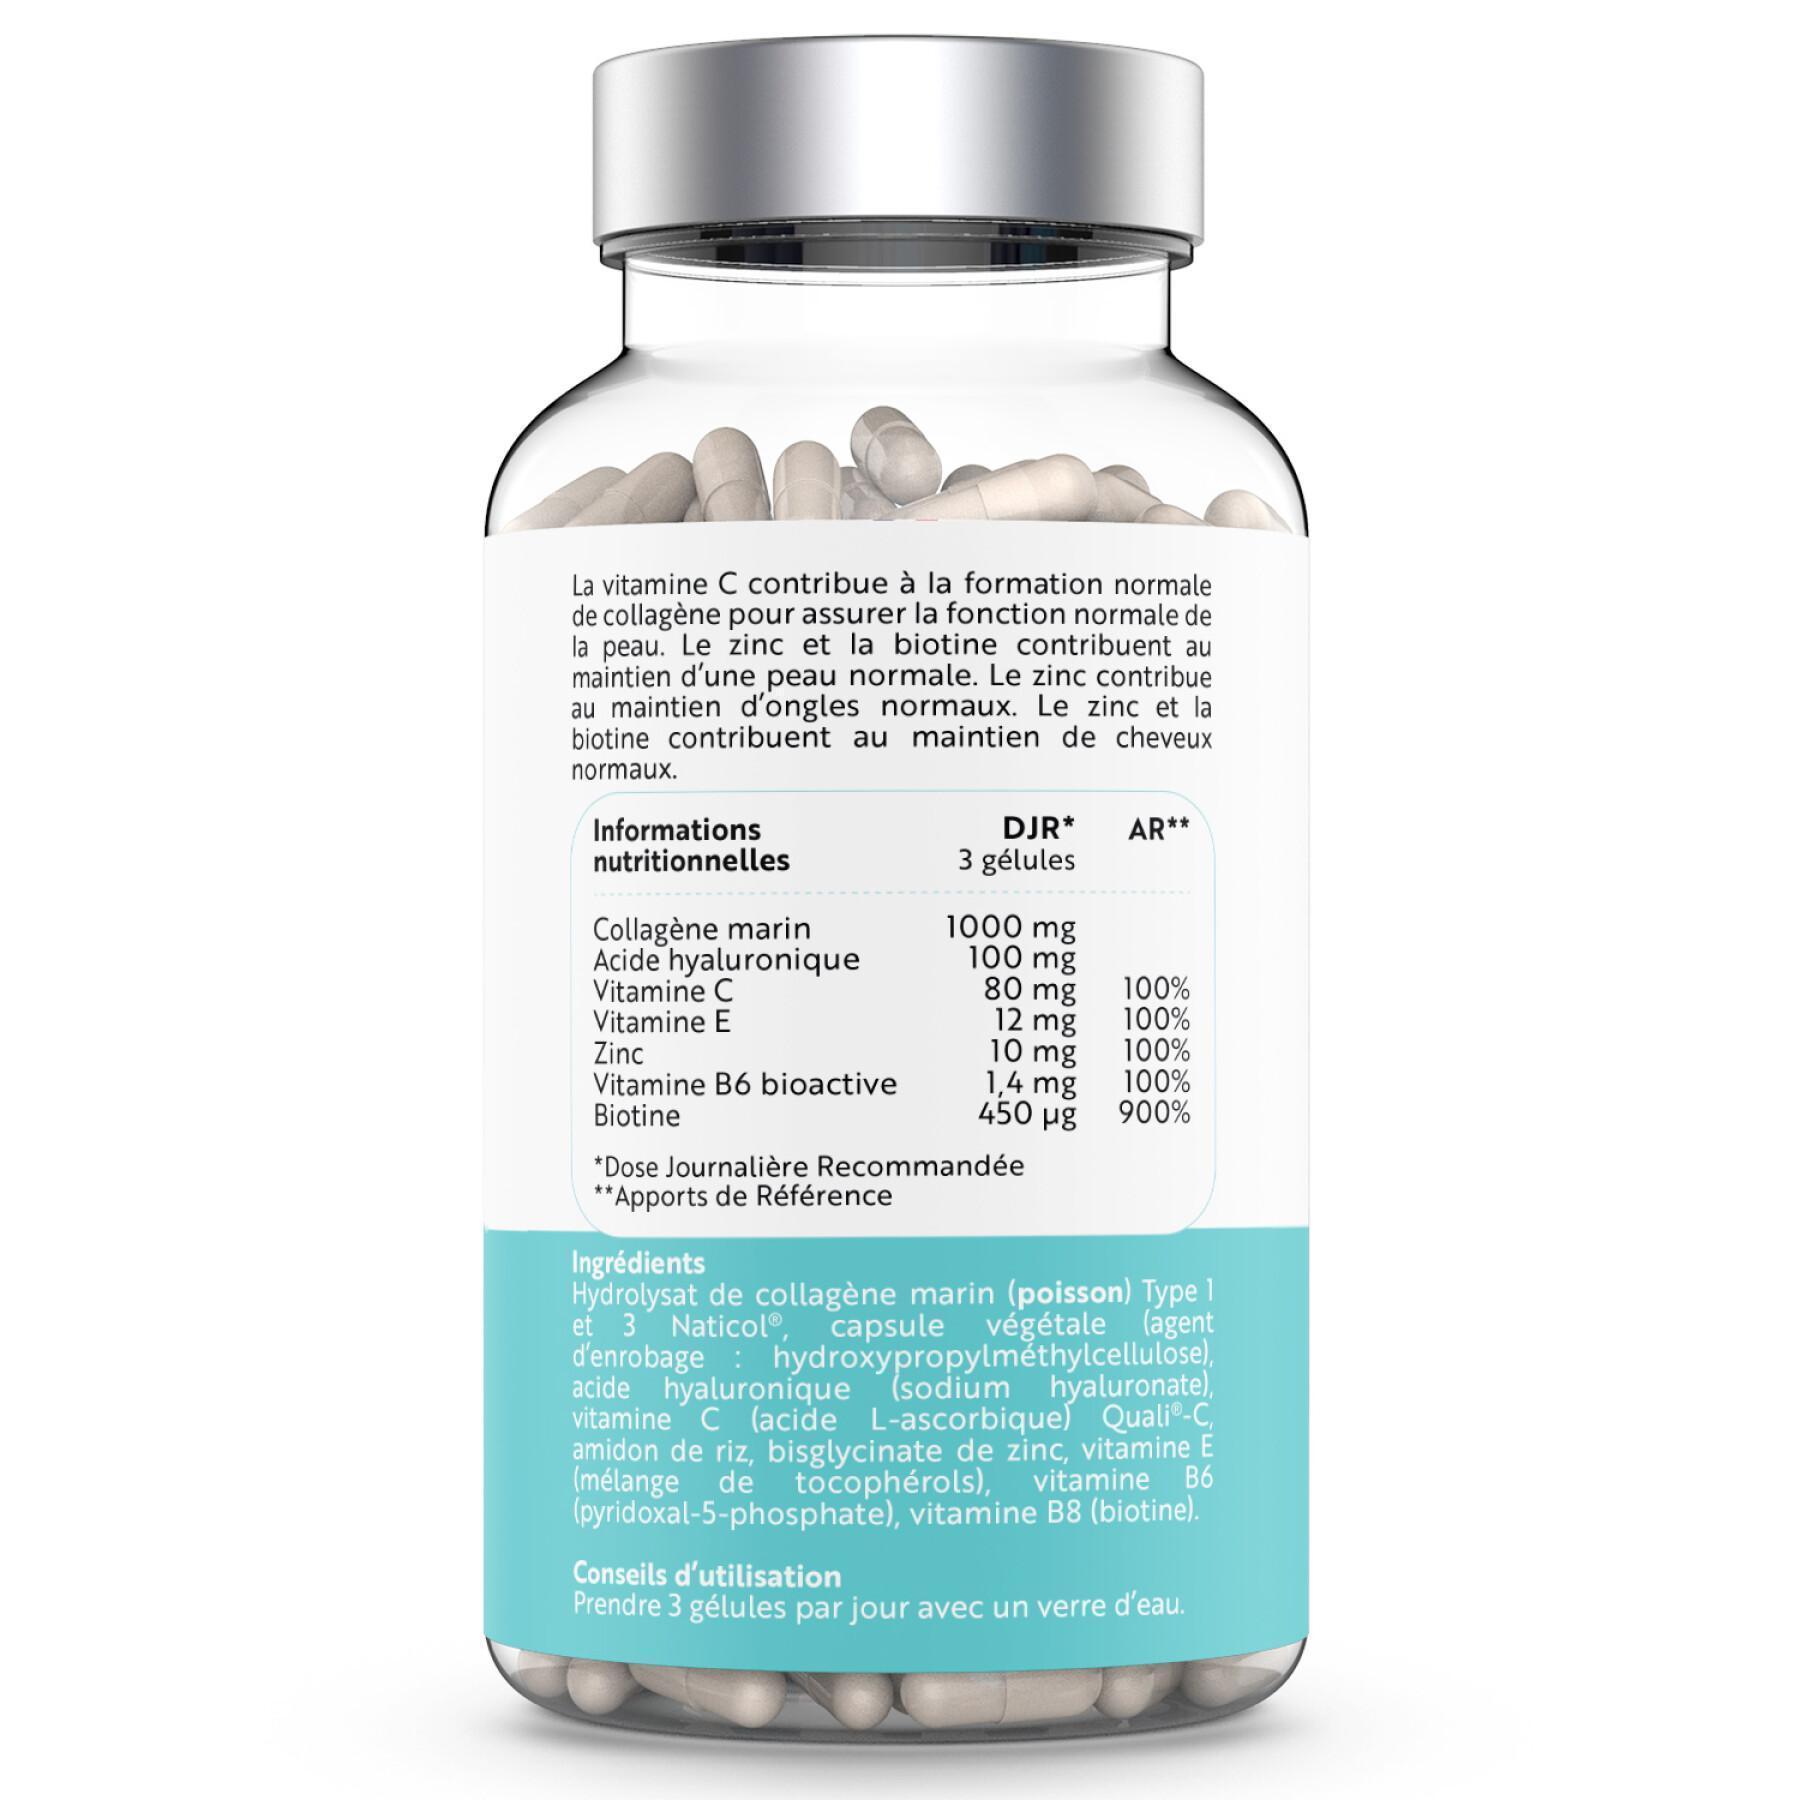 Complemento alimenticio de colágeno marino - 90 cápsulas Nutrivita